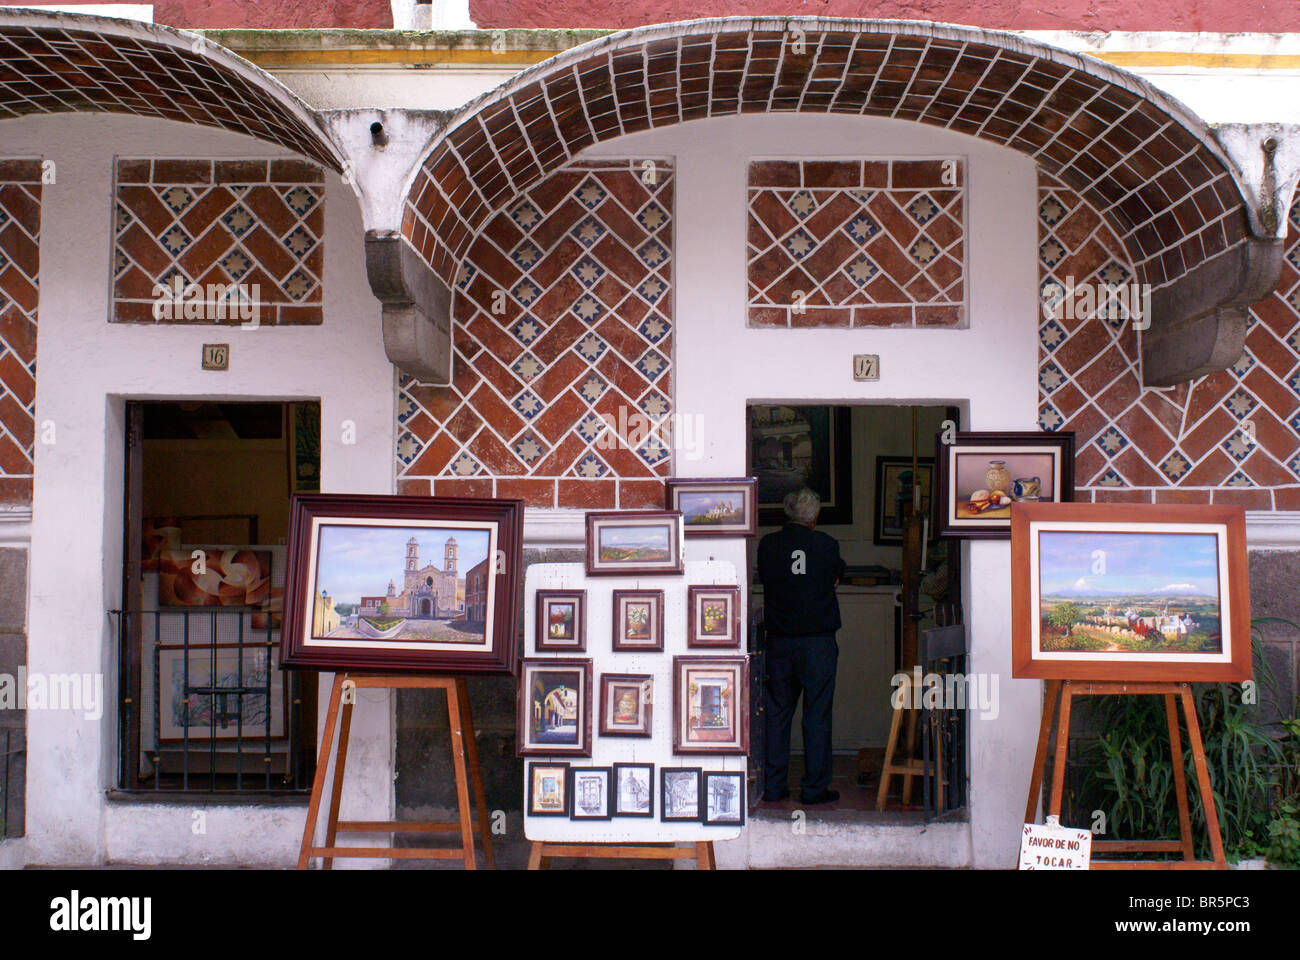 Studios und Gemälde von Künstlern zum Verkauf in der Nähe von Barrio del Artista oder Künstler Viertel in der Stadt Puebla, Mexiko Stockfoto